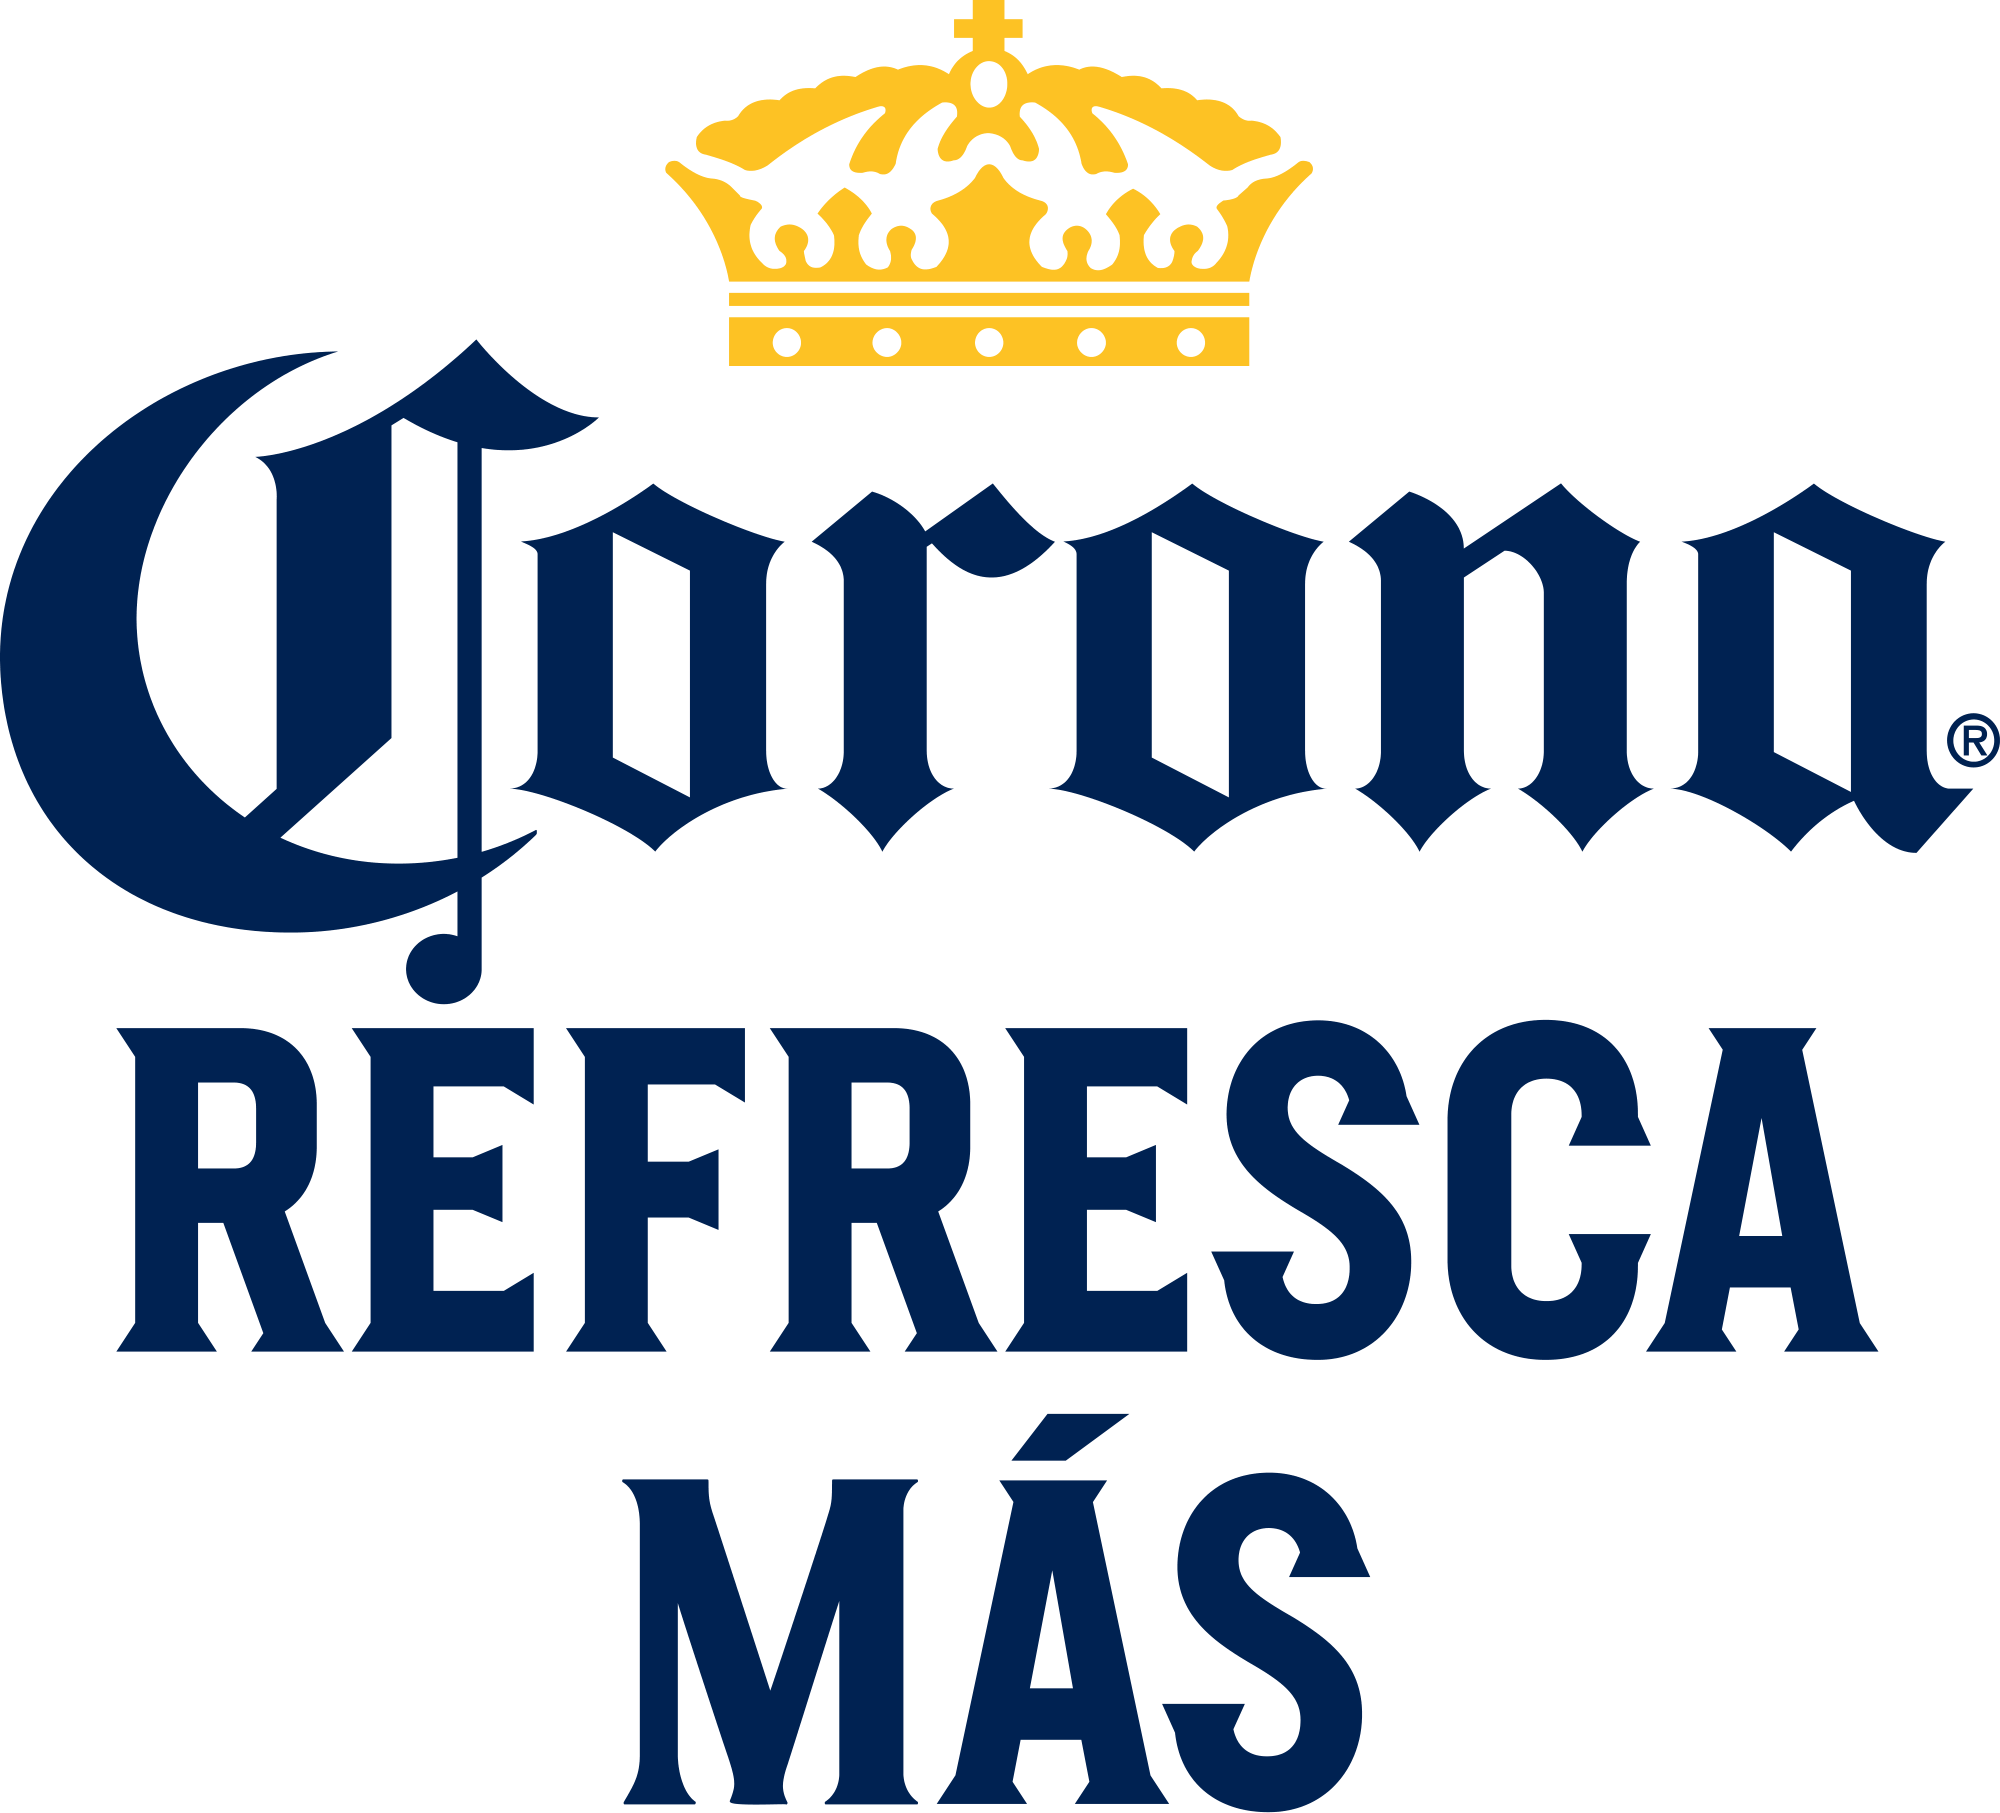 Corona Refresca Logo